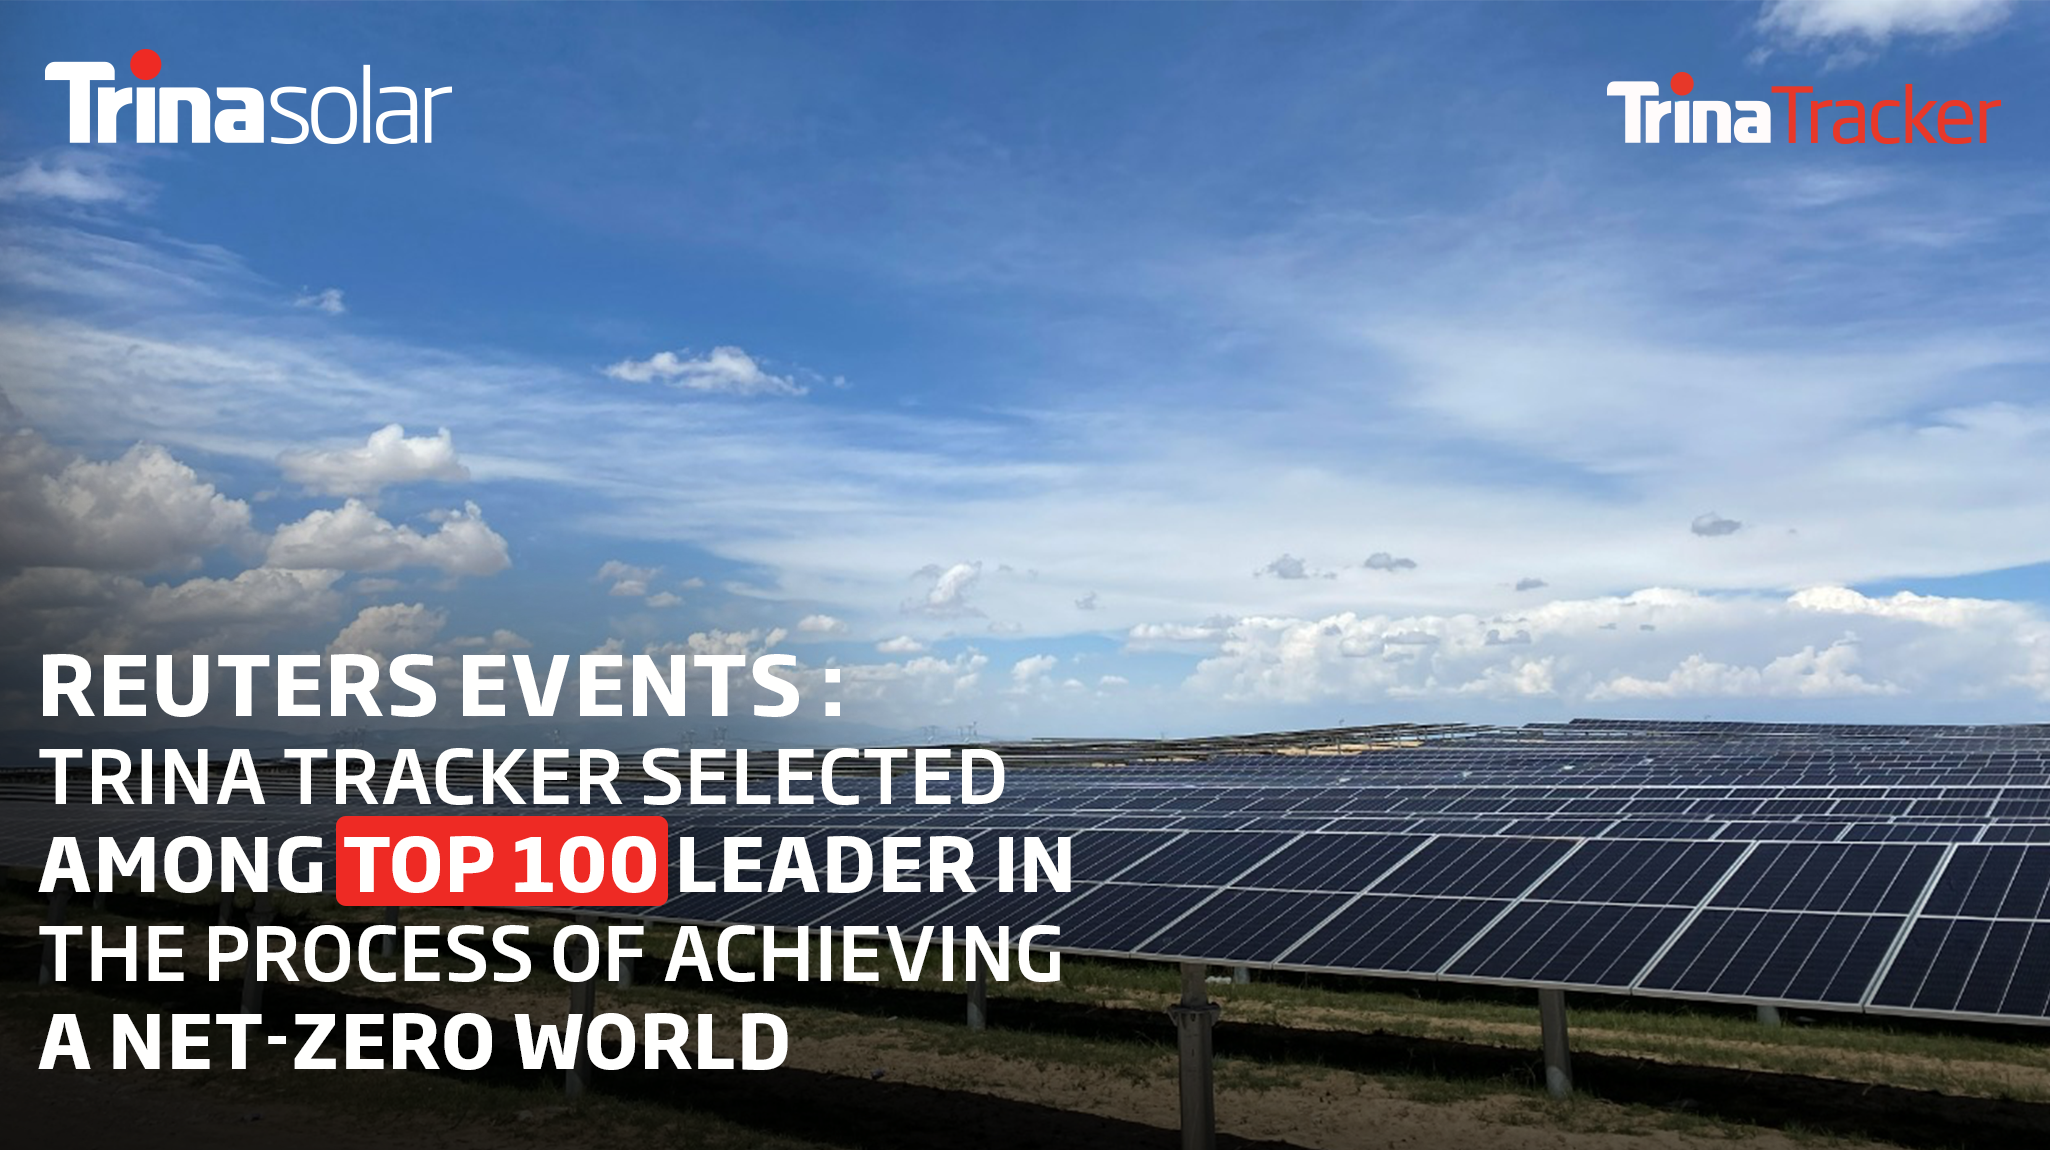 فيكتور تمييزي المسابقة  رويترز تدرج ترينا سولار ضمن قائمة أفضل 100 شركة رائدة في تحول الطاقة على  مستوى العالم – شبكة أخبار الأعمال العربية